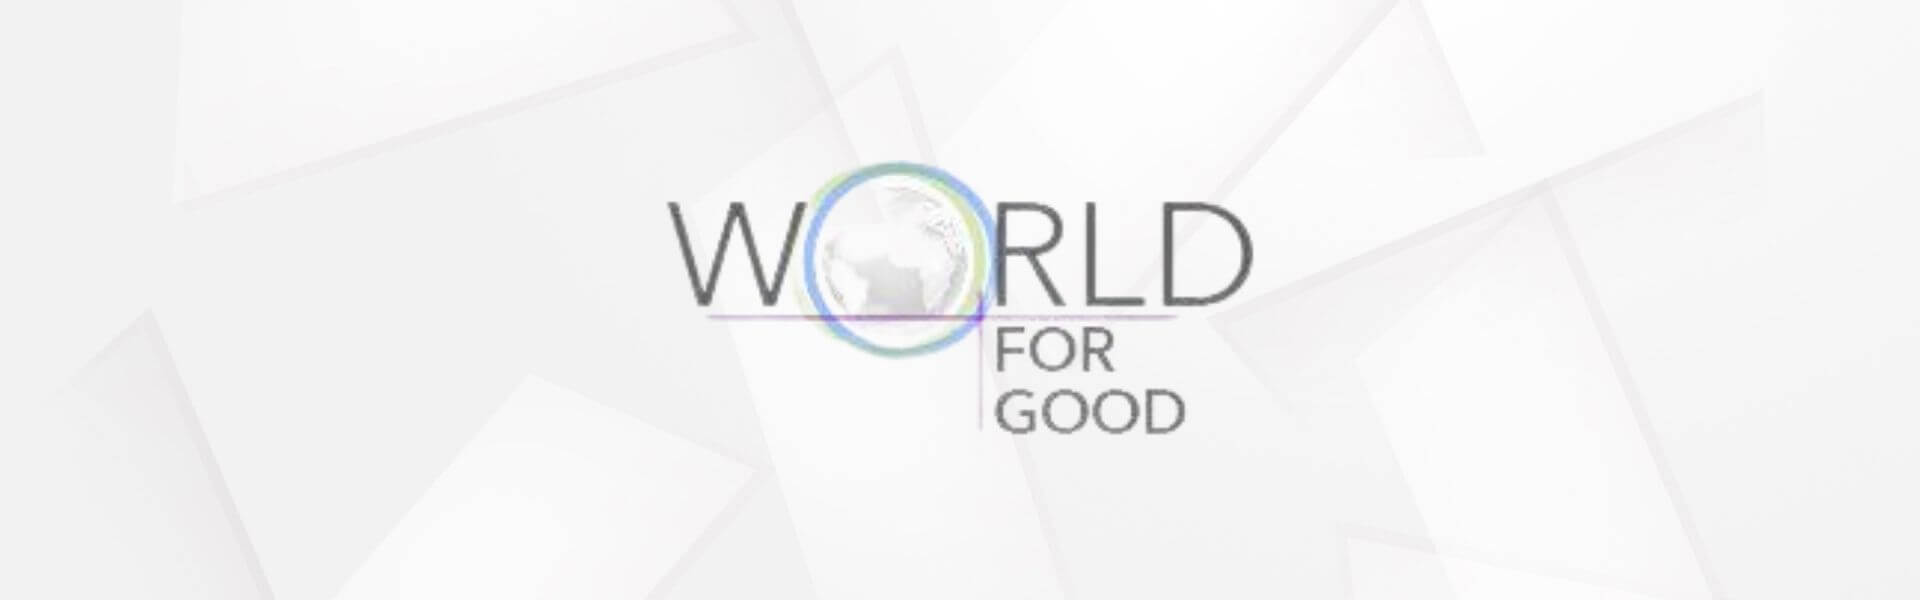 World for Good